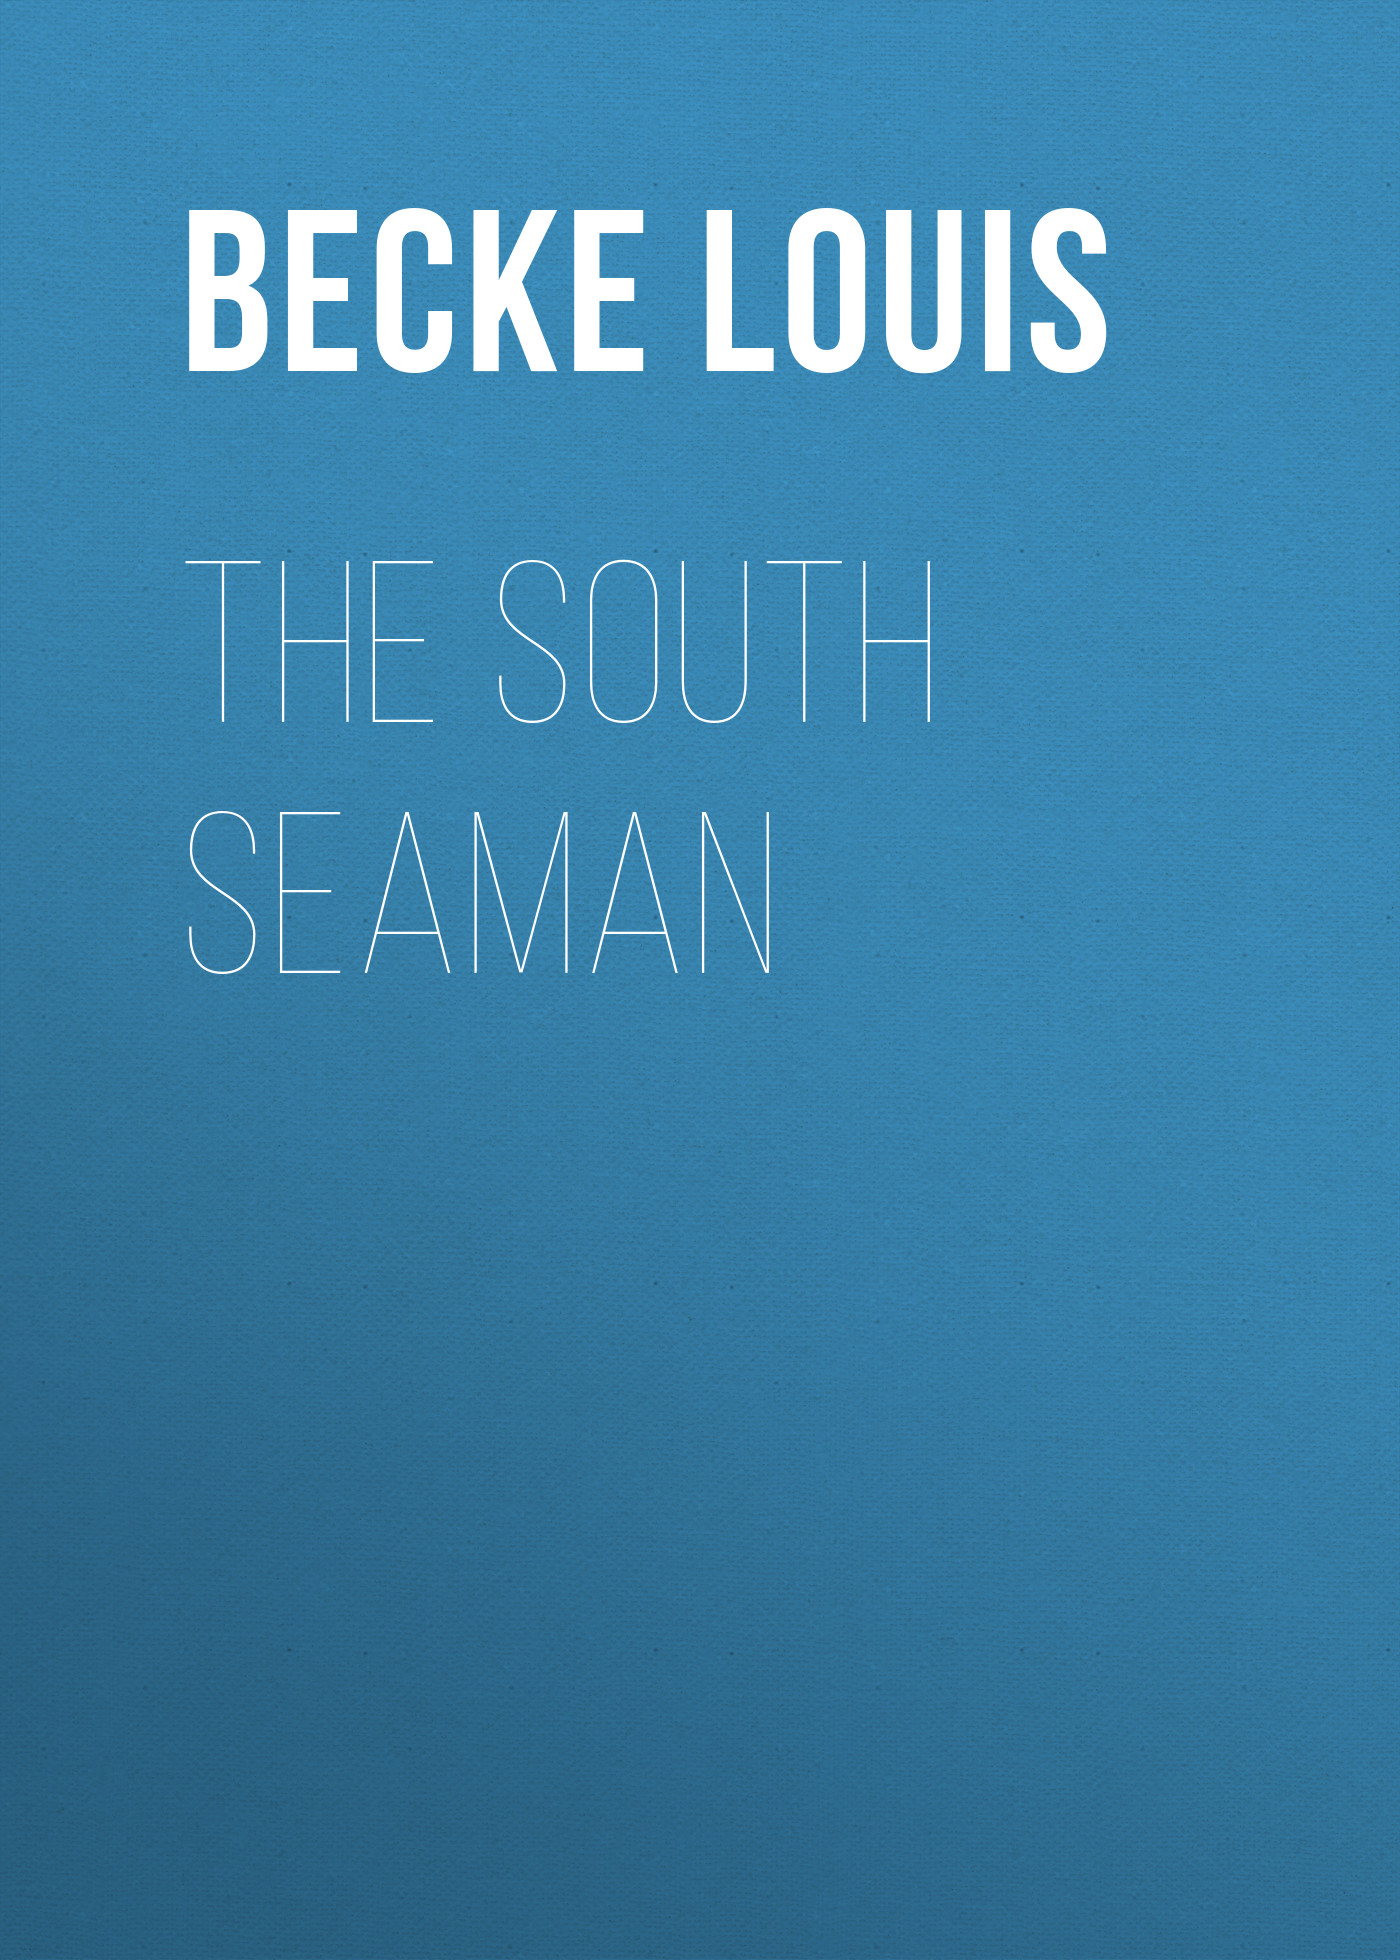 Книга The South Seaman из серии , созданная Louis Becke, может относится к жанру Зарубежная классика, Литература 19 века, Зарубежная старинная литература. Стоимость электронной книги The South Seaman с идентификатором 36367374 составляет 0 руб.